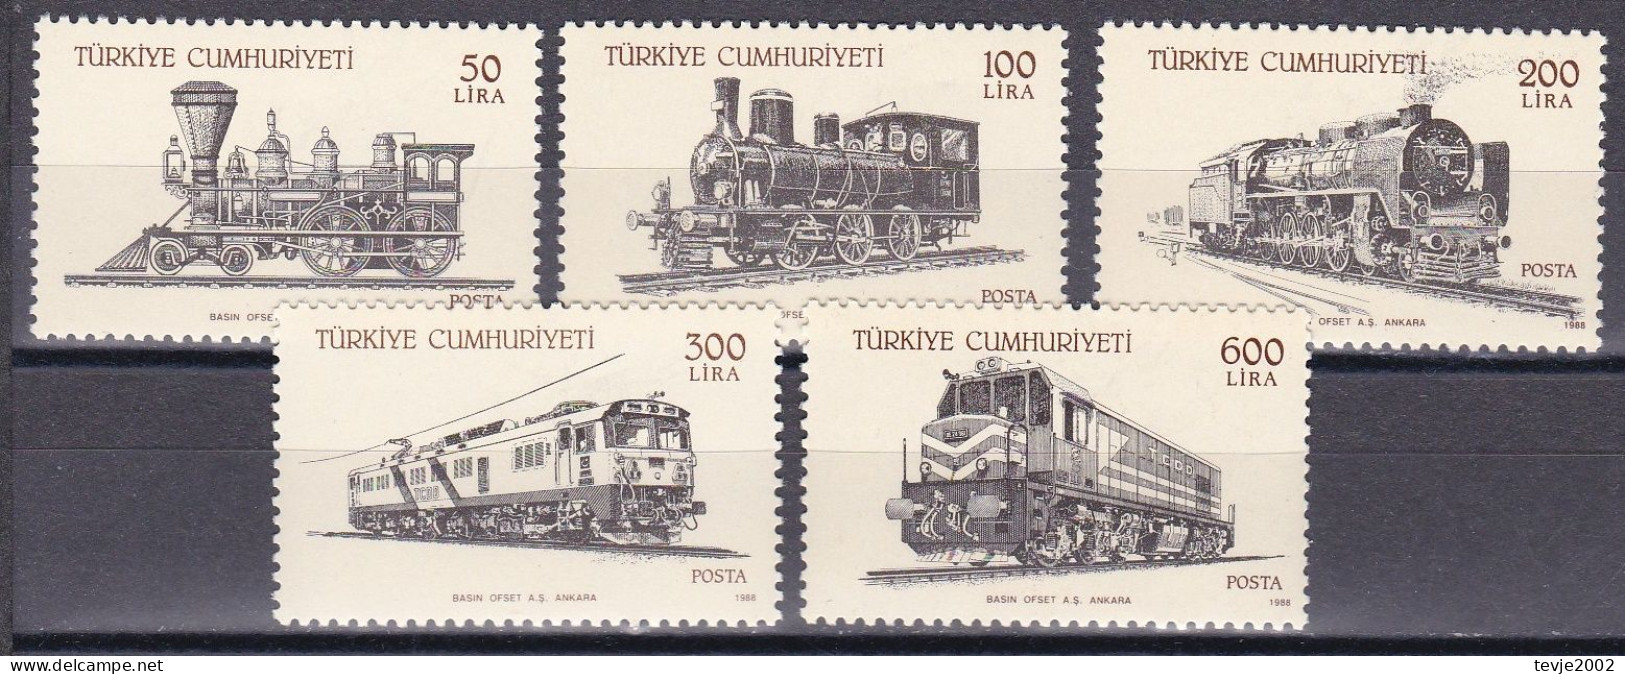 Türkei 1988 - Mi.Nr. 2814 - 2818 - Postfrisch MNH - Eisenbahn Railways Lokomotiven Locomotives - Trains